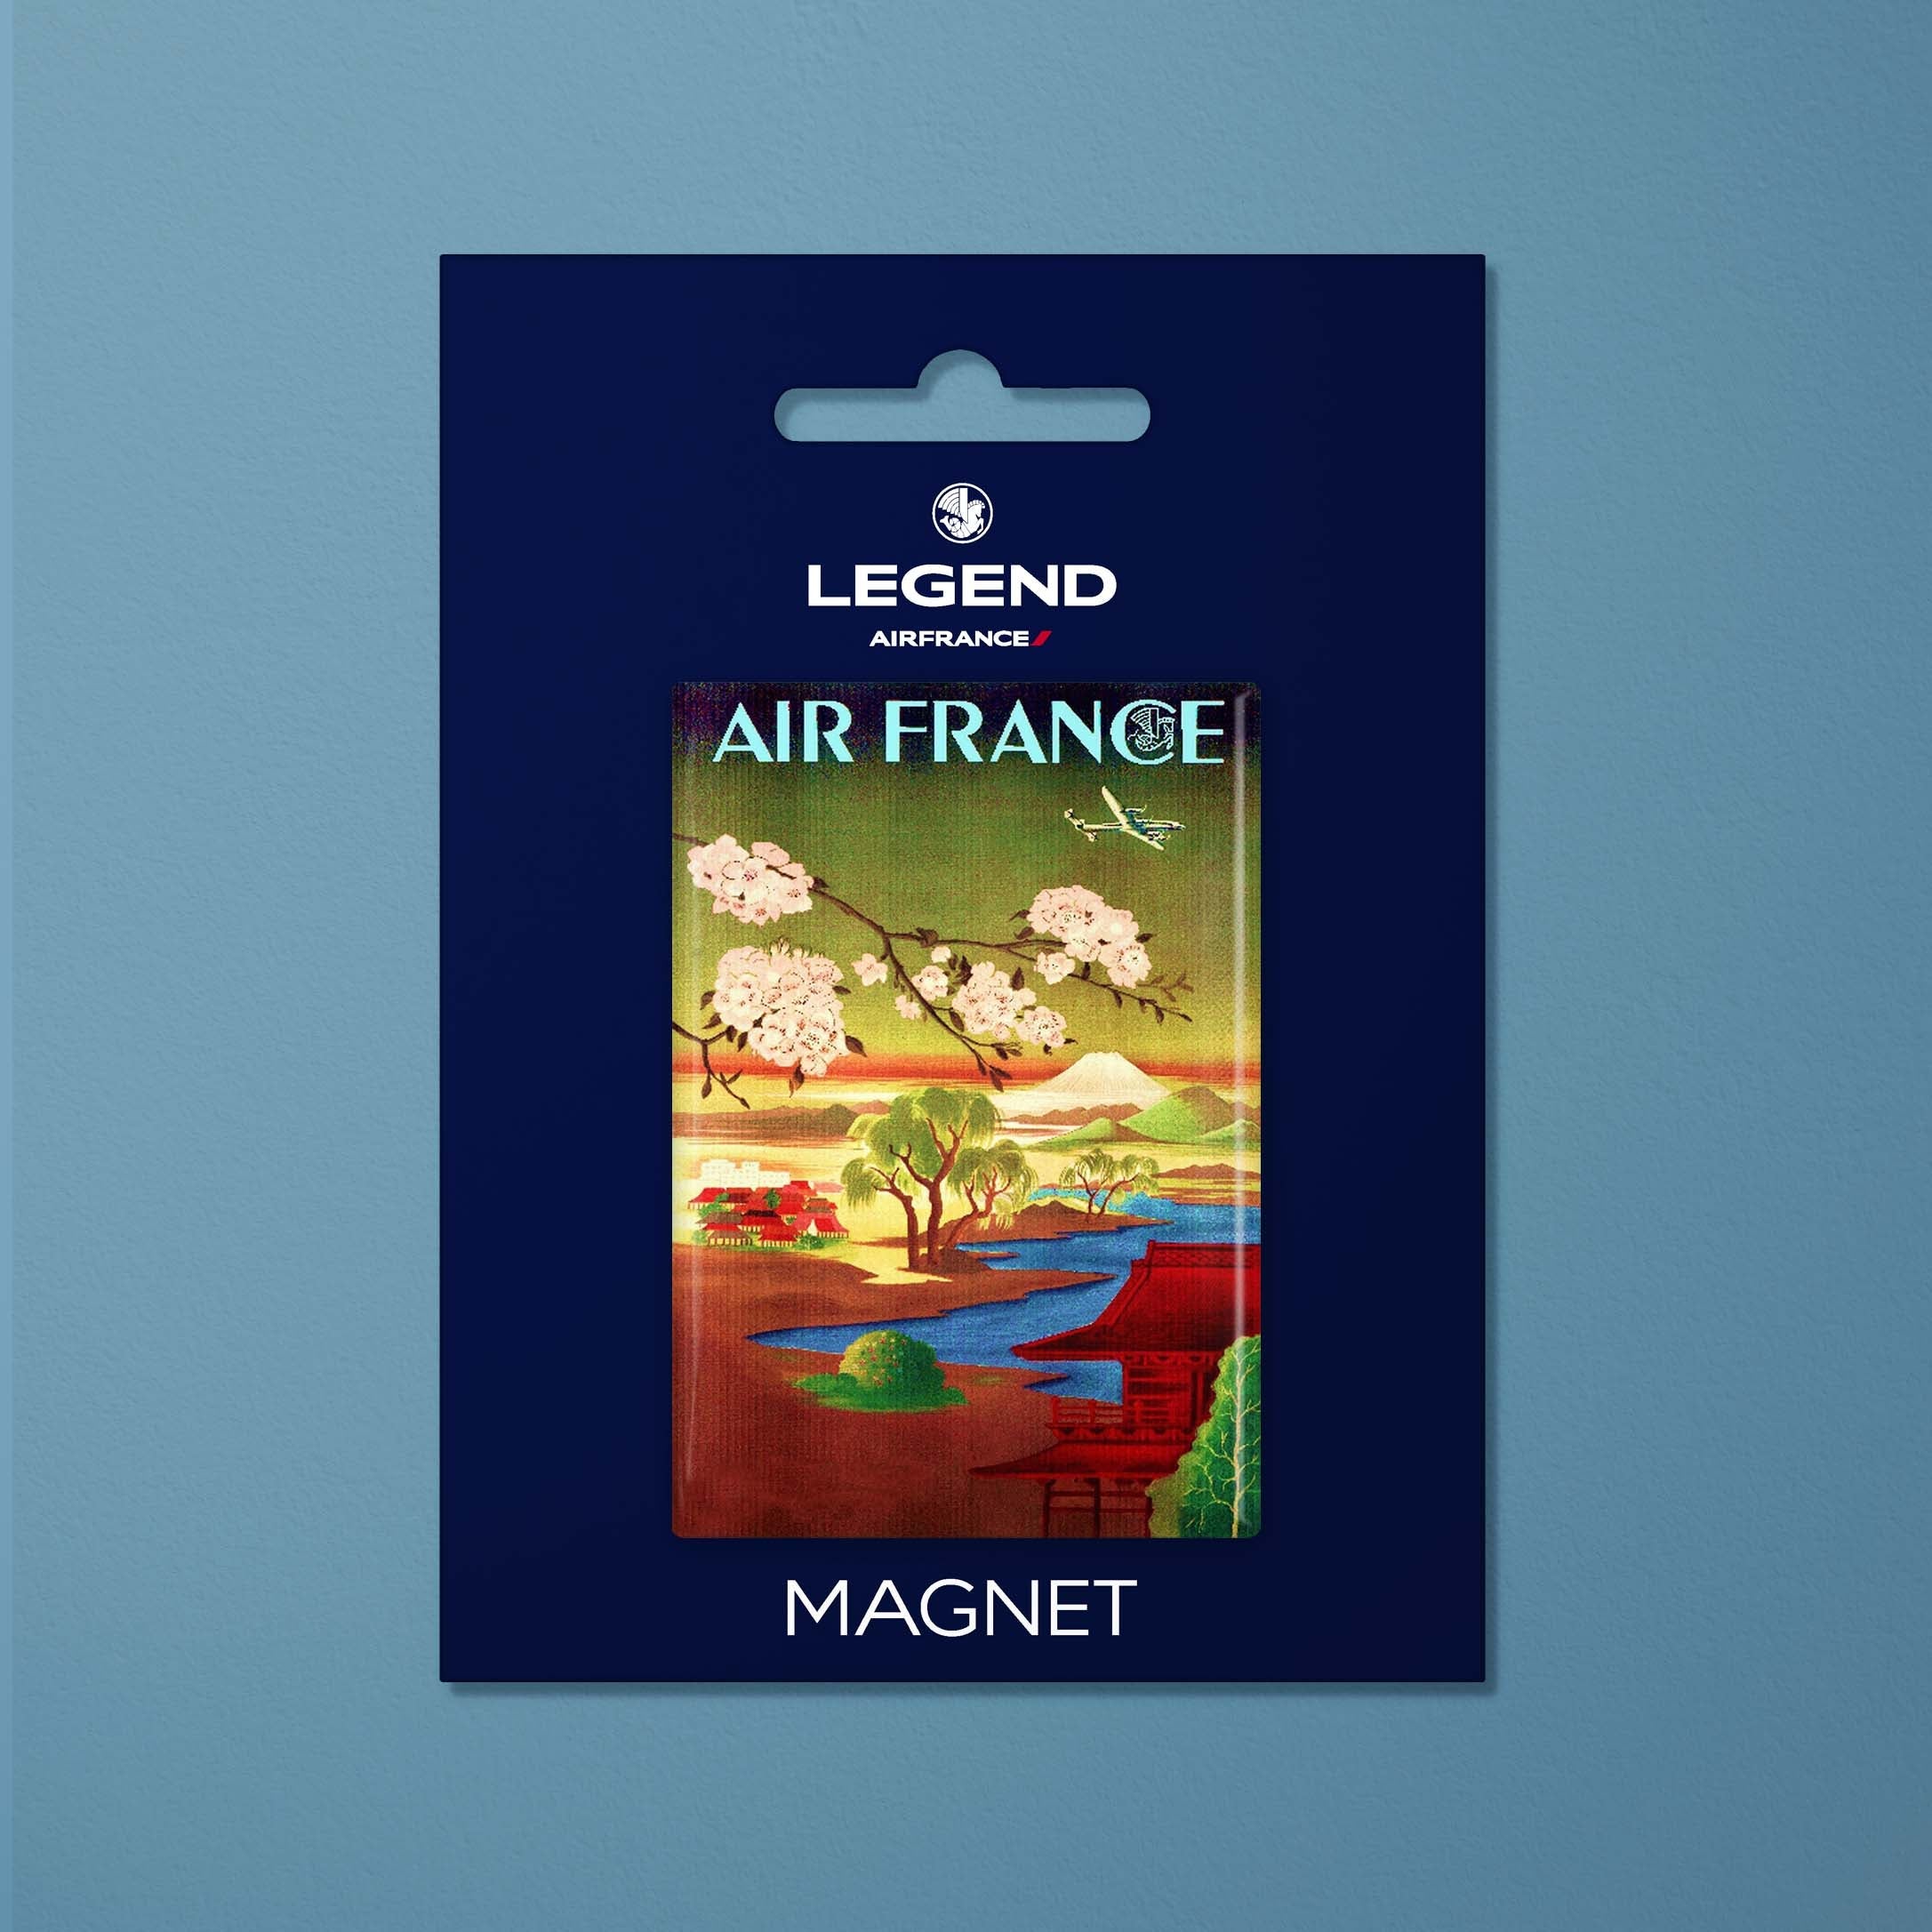 Magnet Air France Legend Paris - Tokyo, cherry blossoms